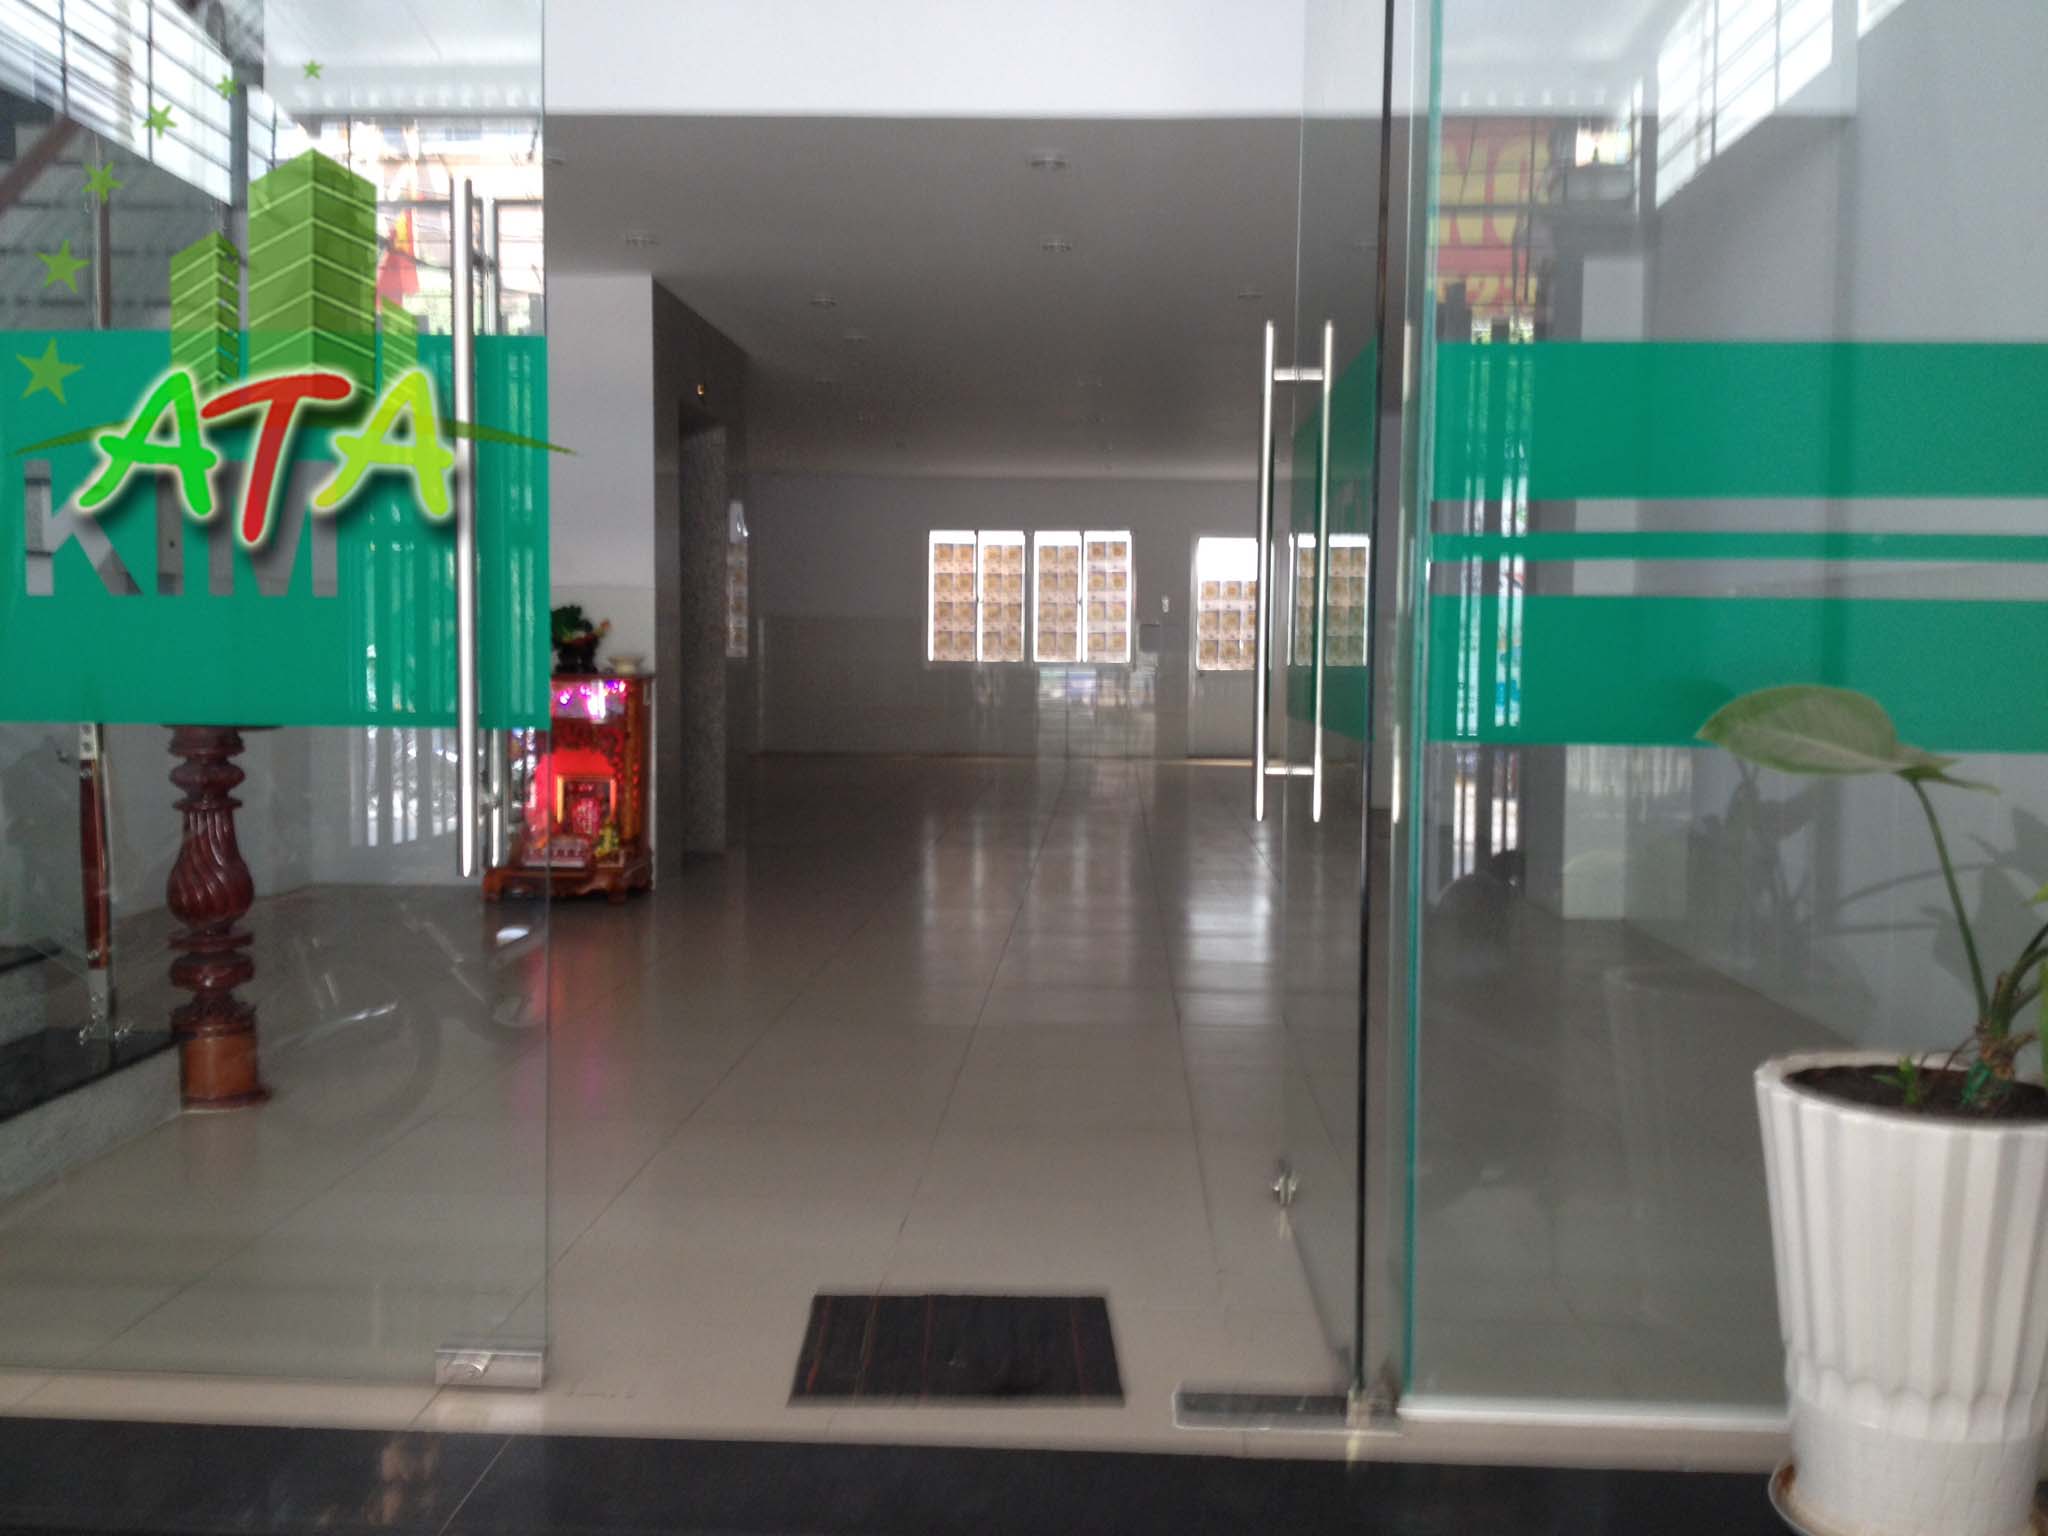 văn phòng cho thuê quận 4, ATA Nguyễn Khoái, Kim Nguyên, office for lease in hcmc, D4